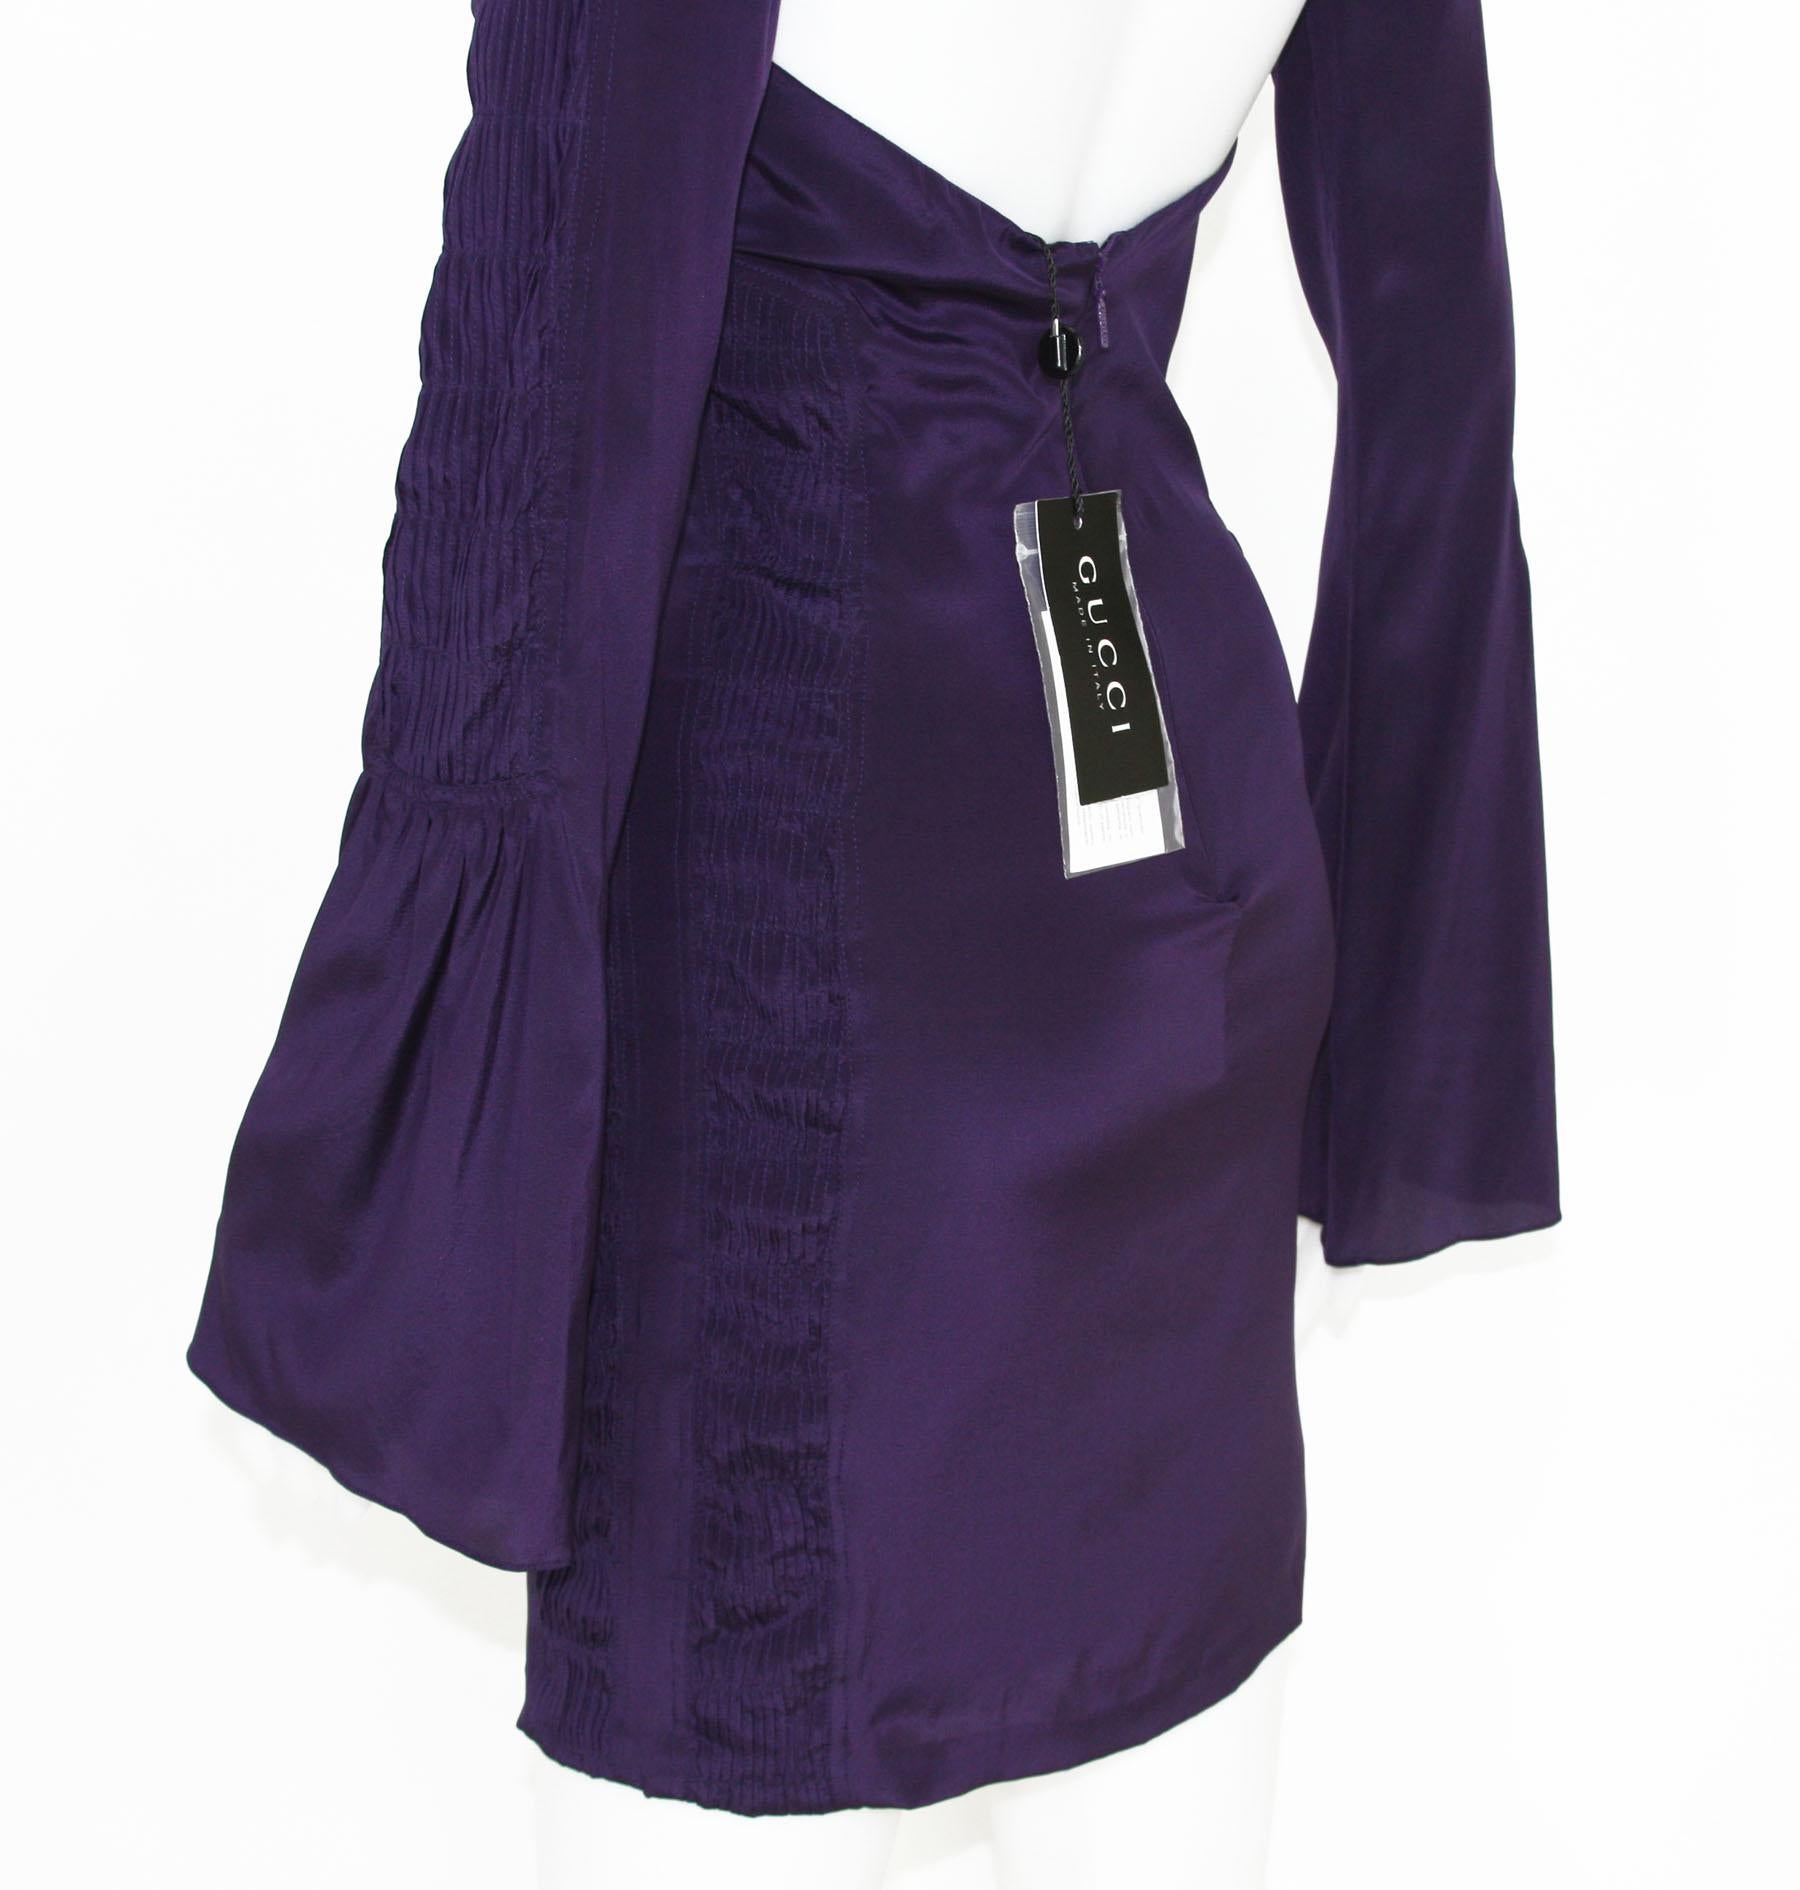 Tom Ford for Gucci, robe dos nu plongeant en soie violet profond, défilé P/É 2004, taille 38 et 44, neuve en vente 3